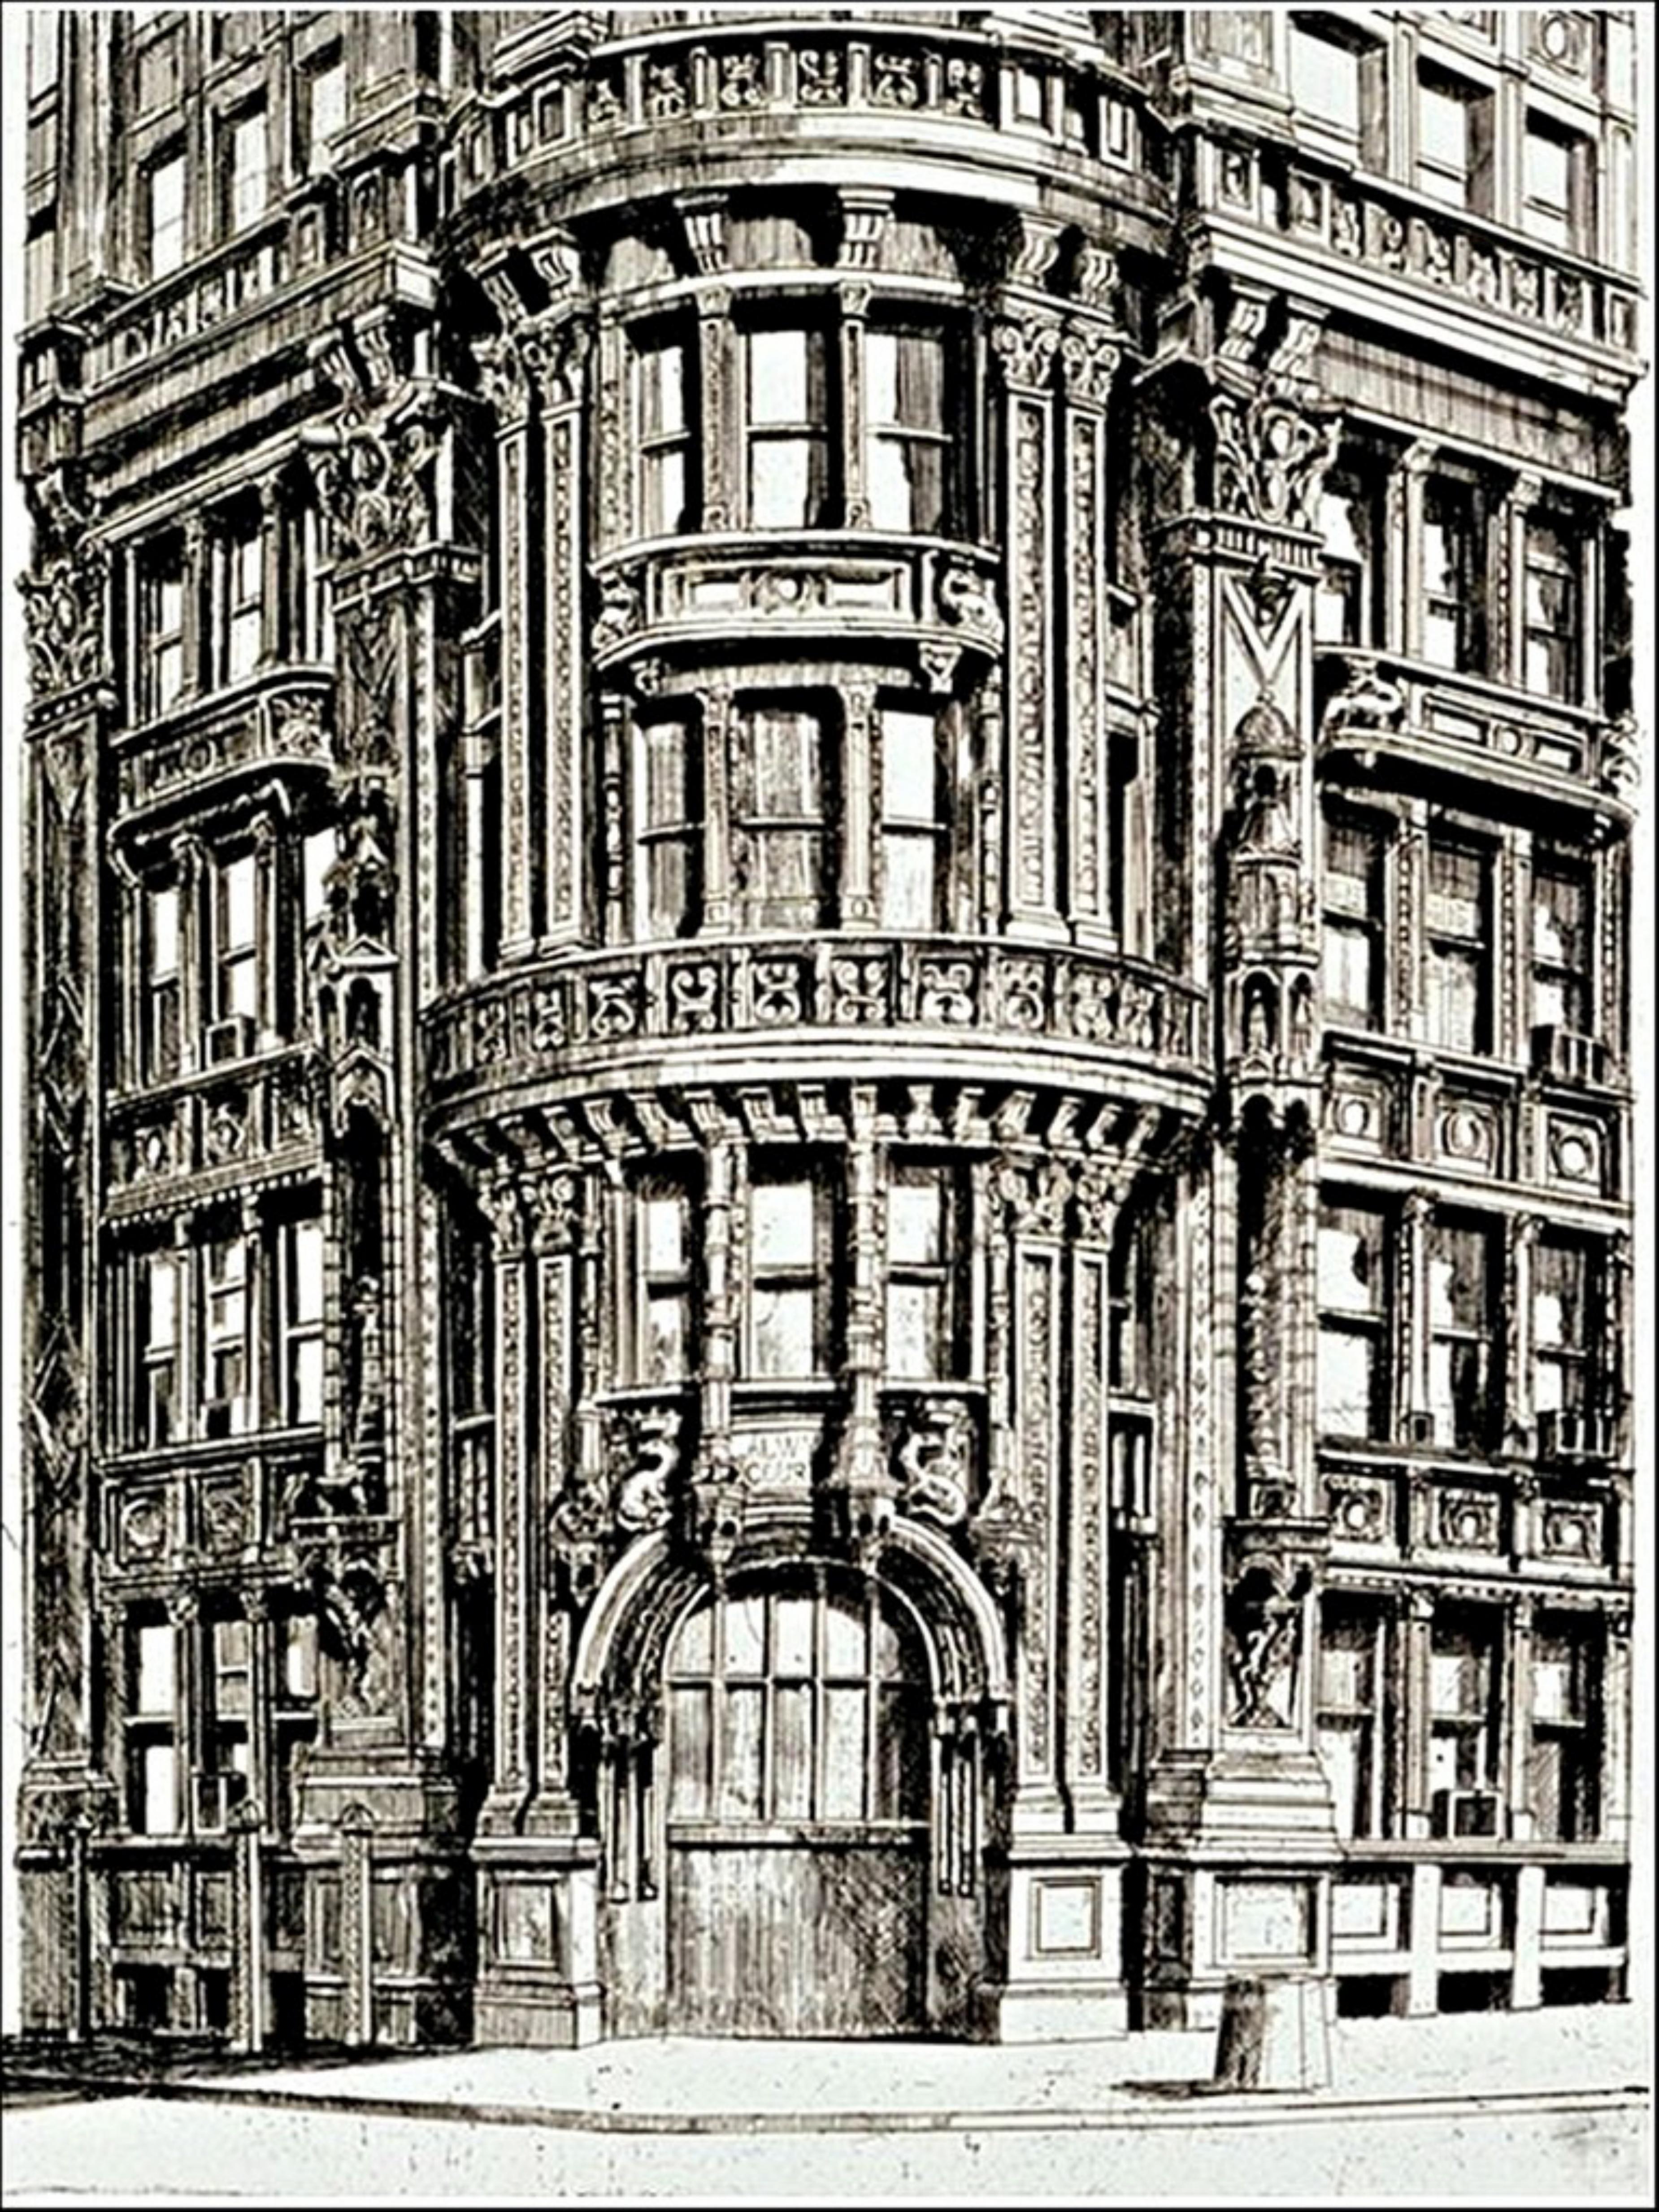 Alwyn Court (180 West 58th Street, NYC) - Print by Richard Haas